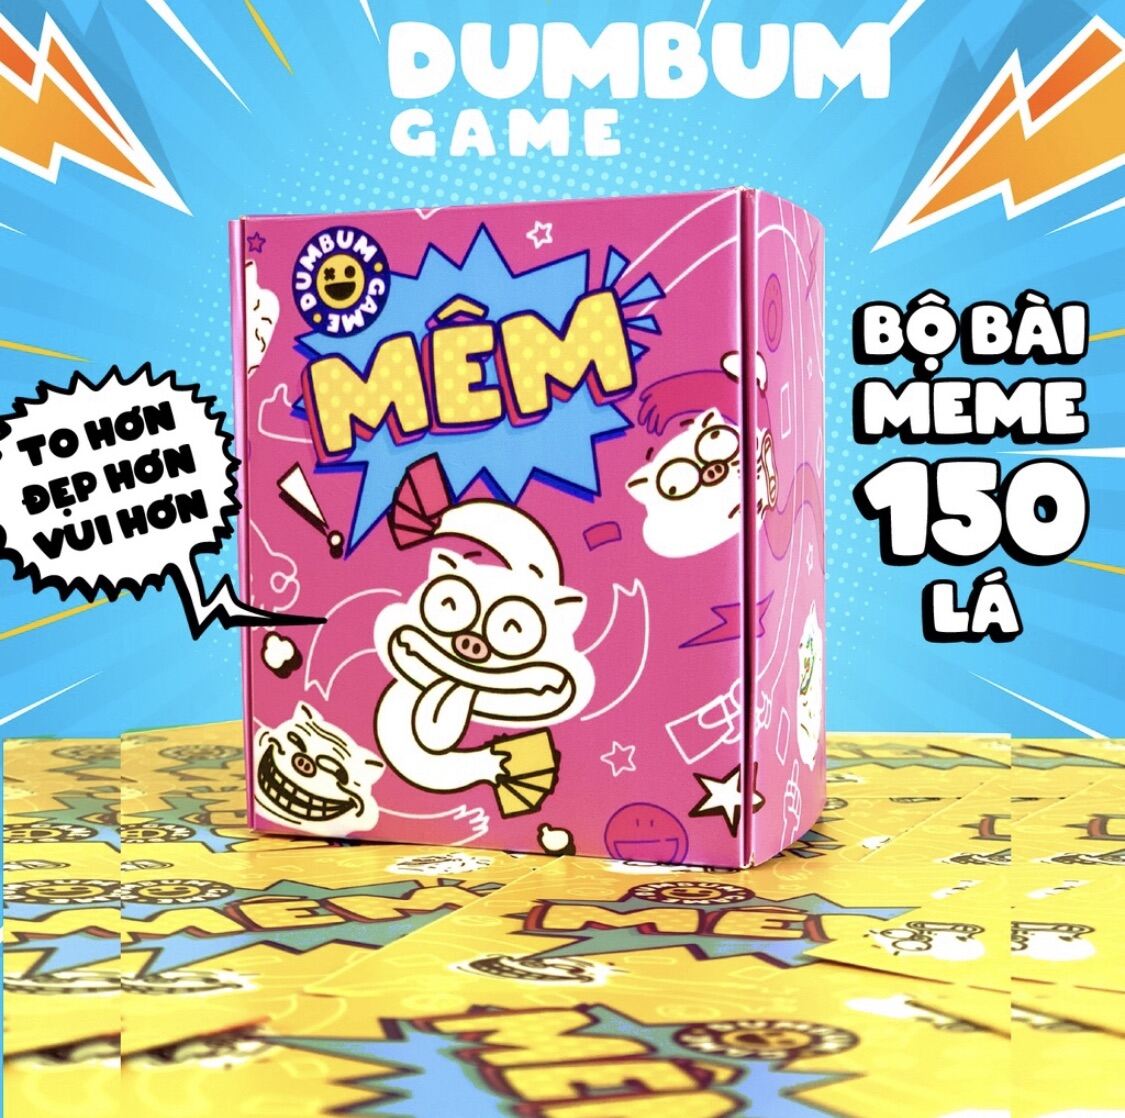 Bộ bài Mêm DumBum, boardgame meme hài hước chơi nhóm cùng bạn bè 150 lá